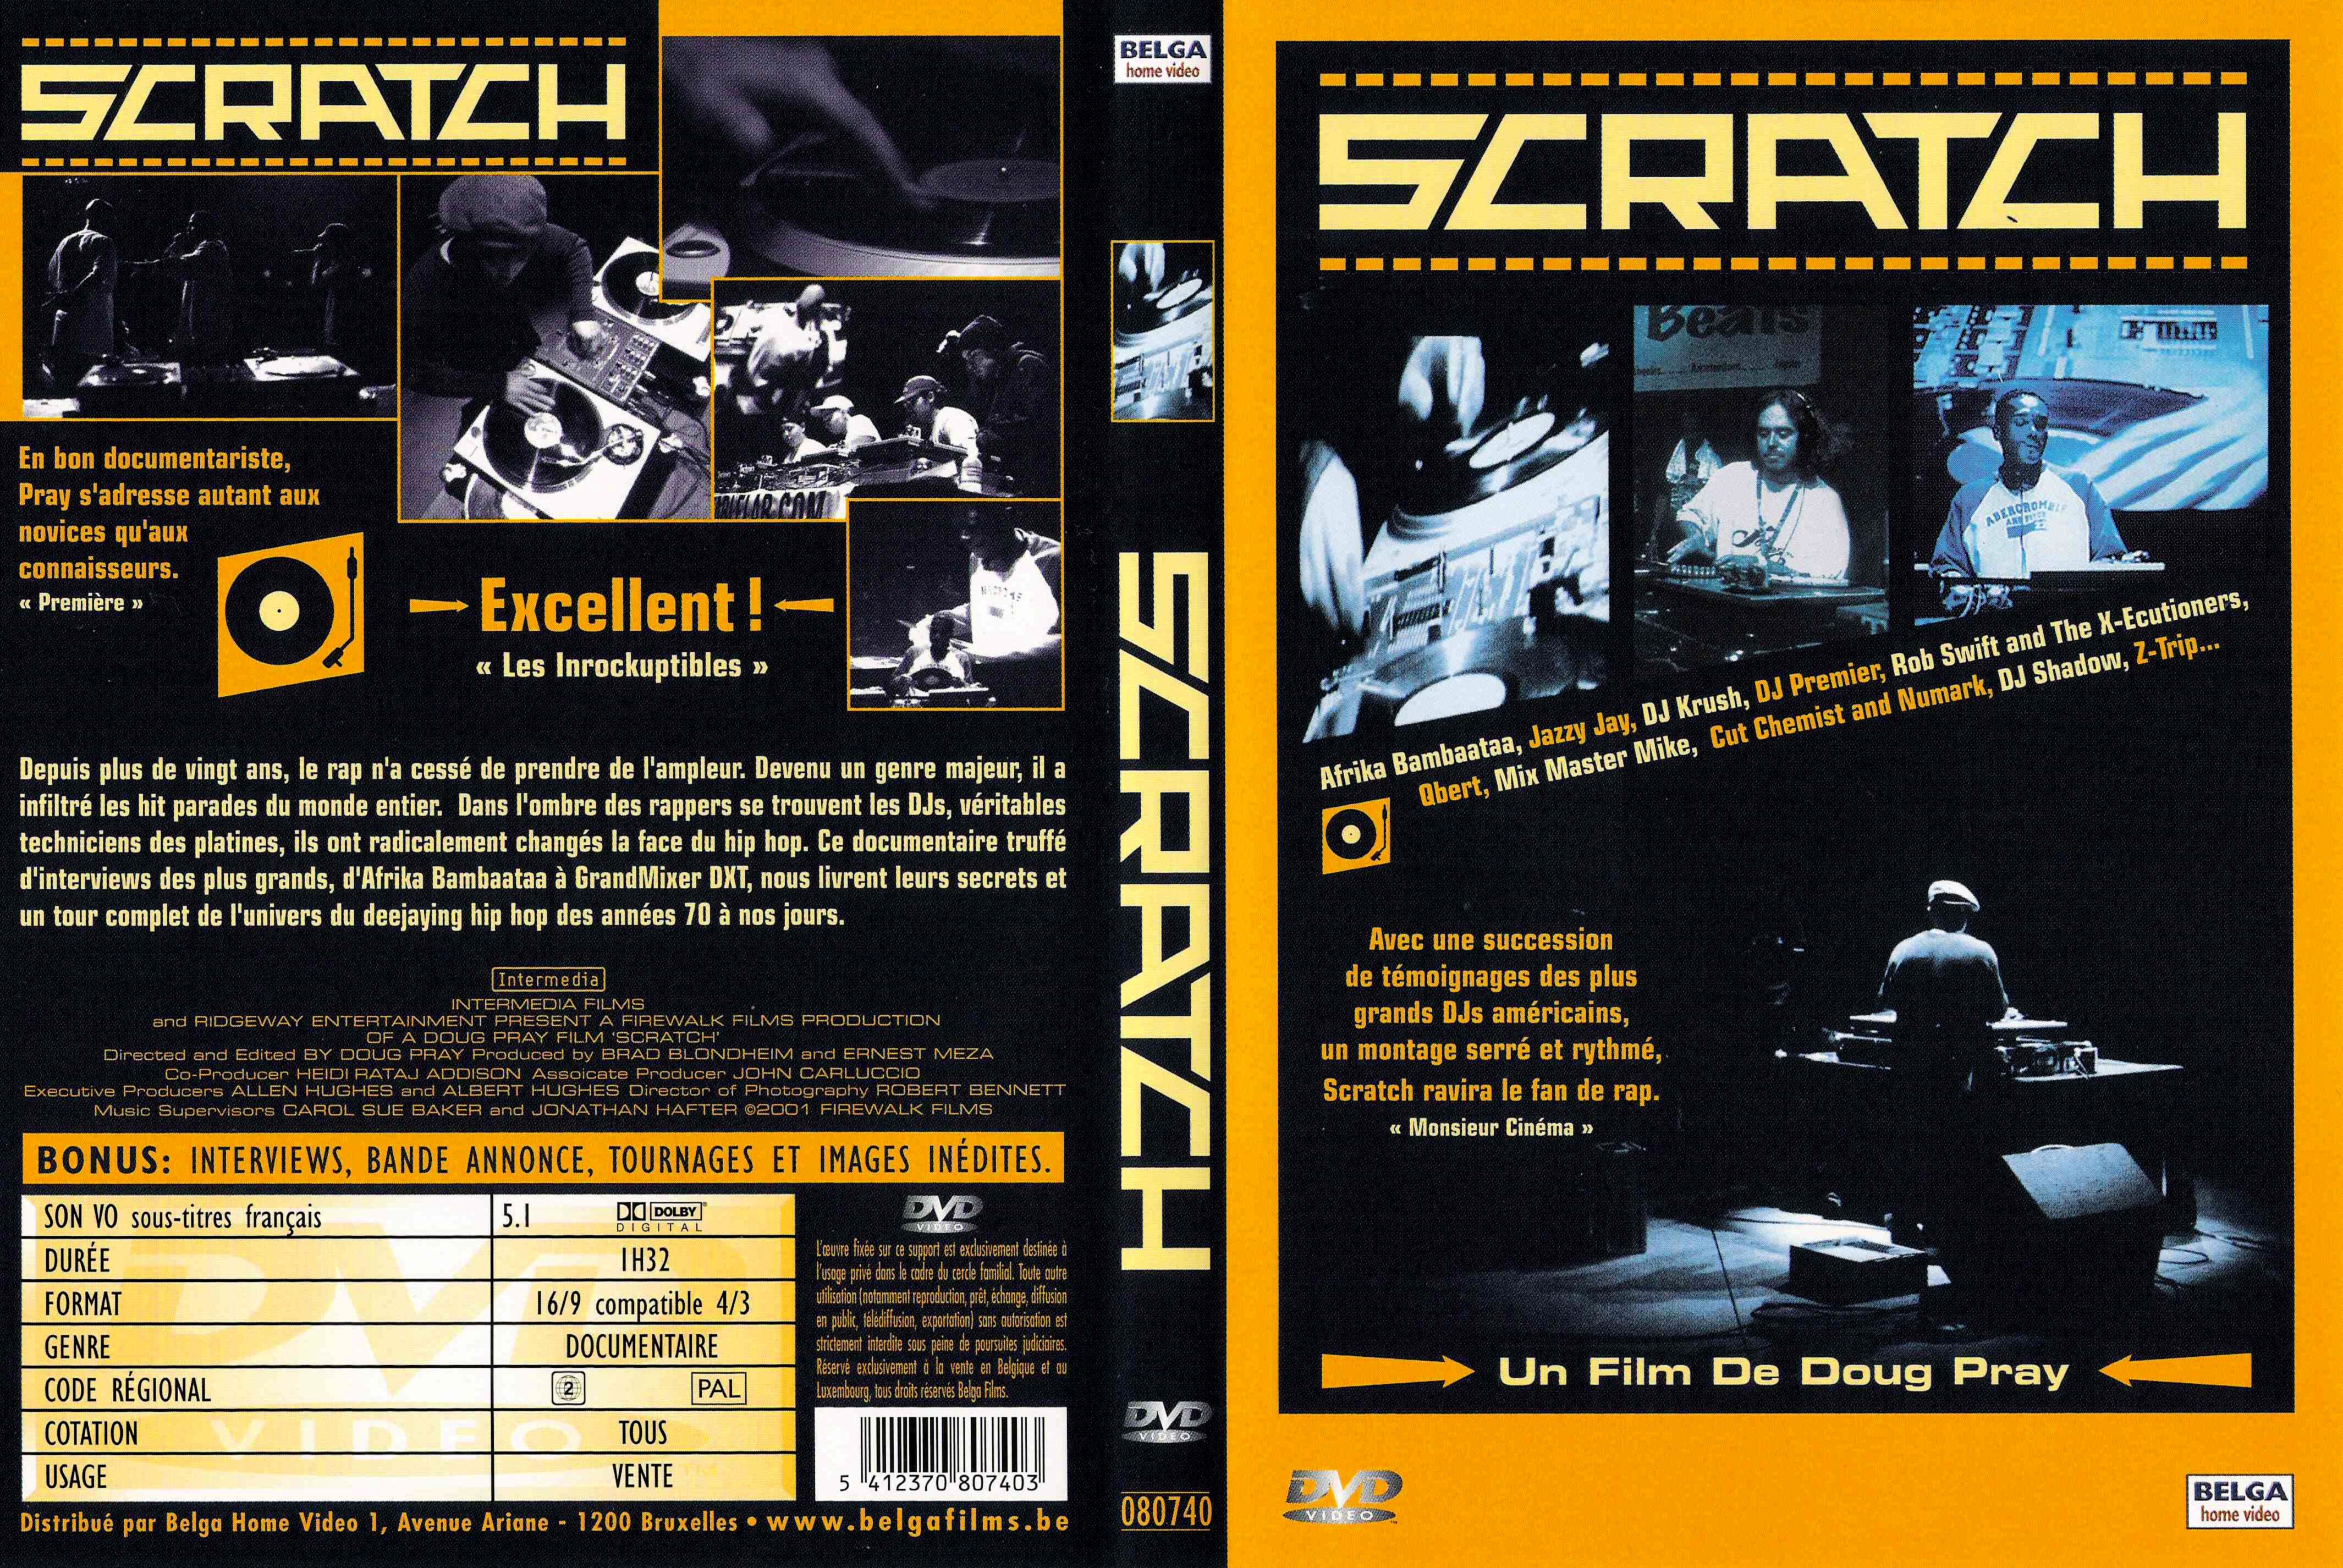 Jaquette DVD Scratch